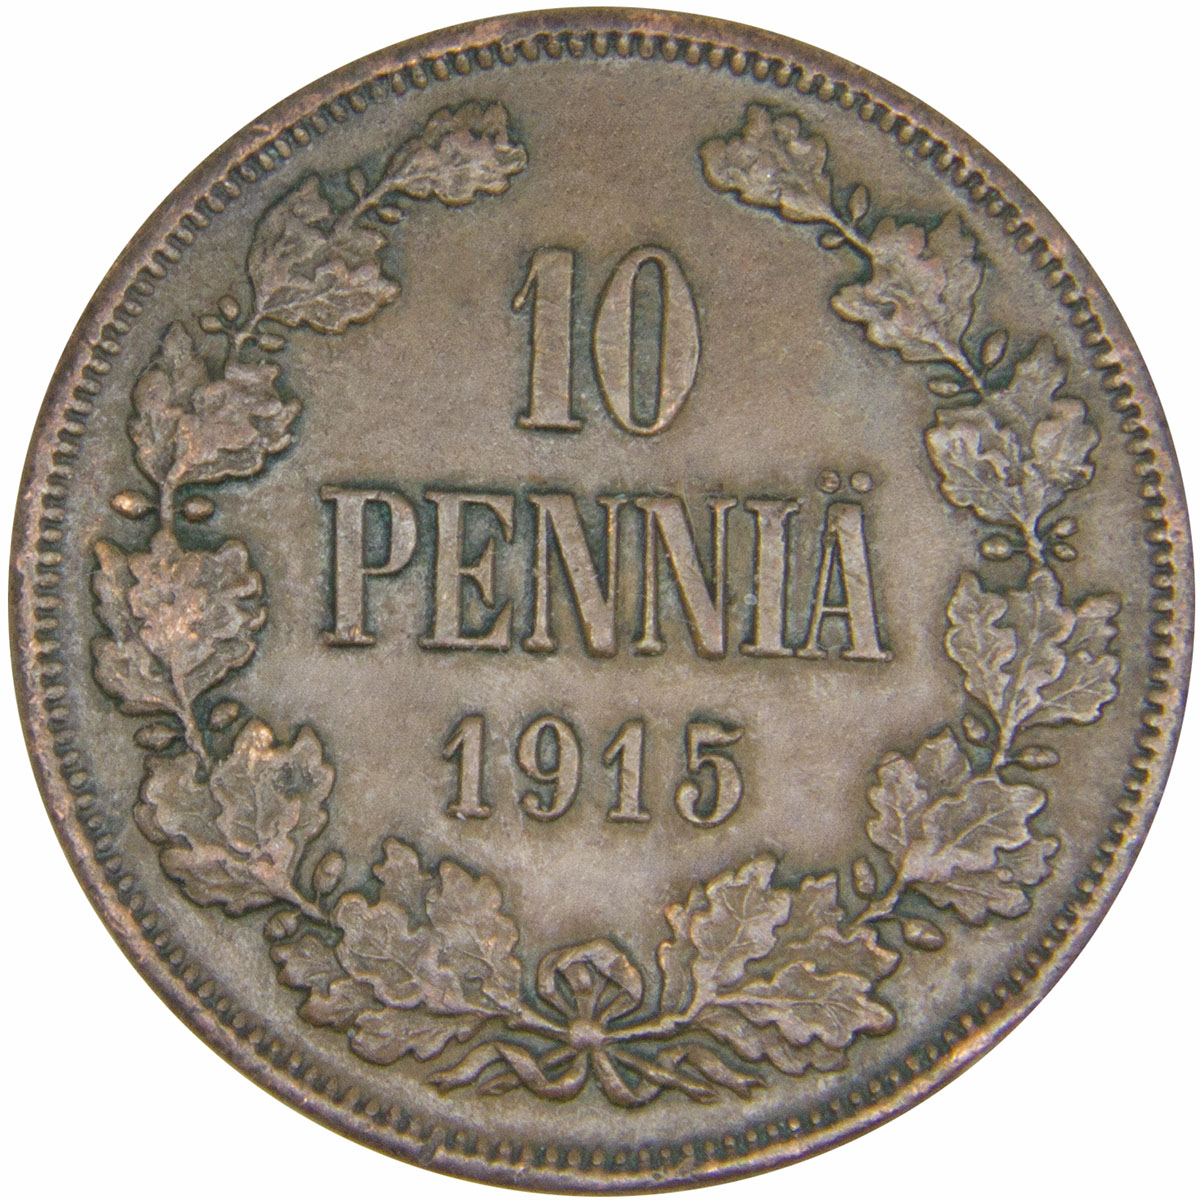 Монета номиналом 10 пенни. Сохранность VF. Россия для Финляндии, 1915 год